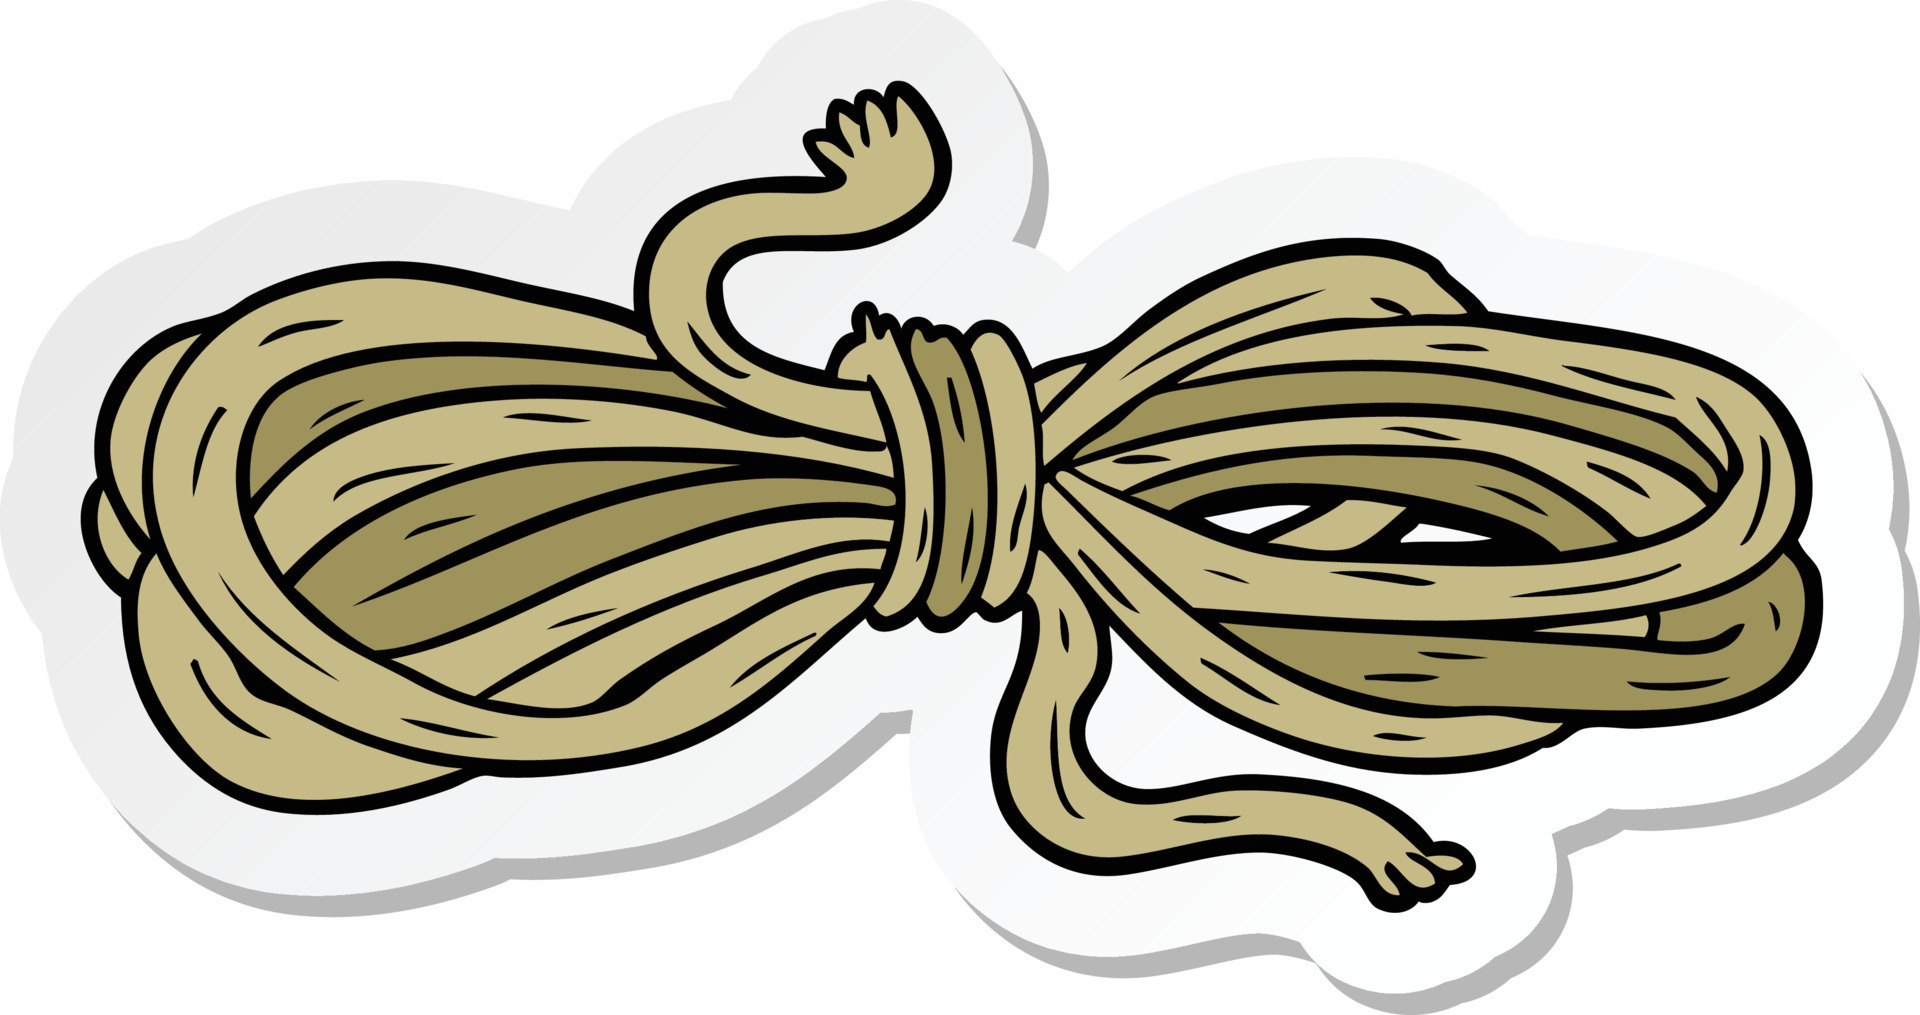 Pin-up silk rope cute cartoon artist Stock Vector by ©jera 52688657